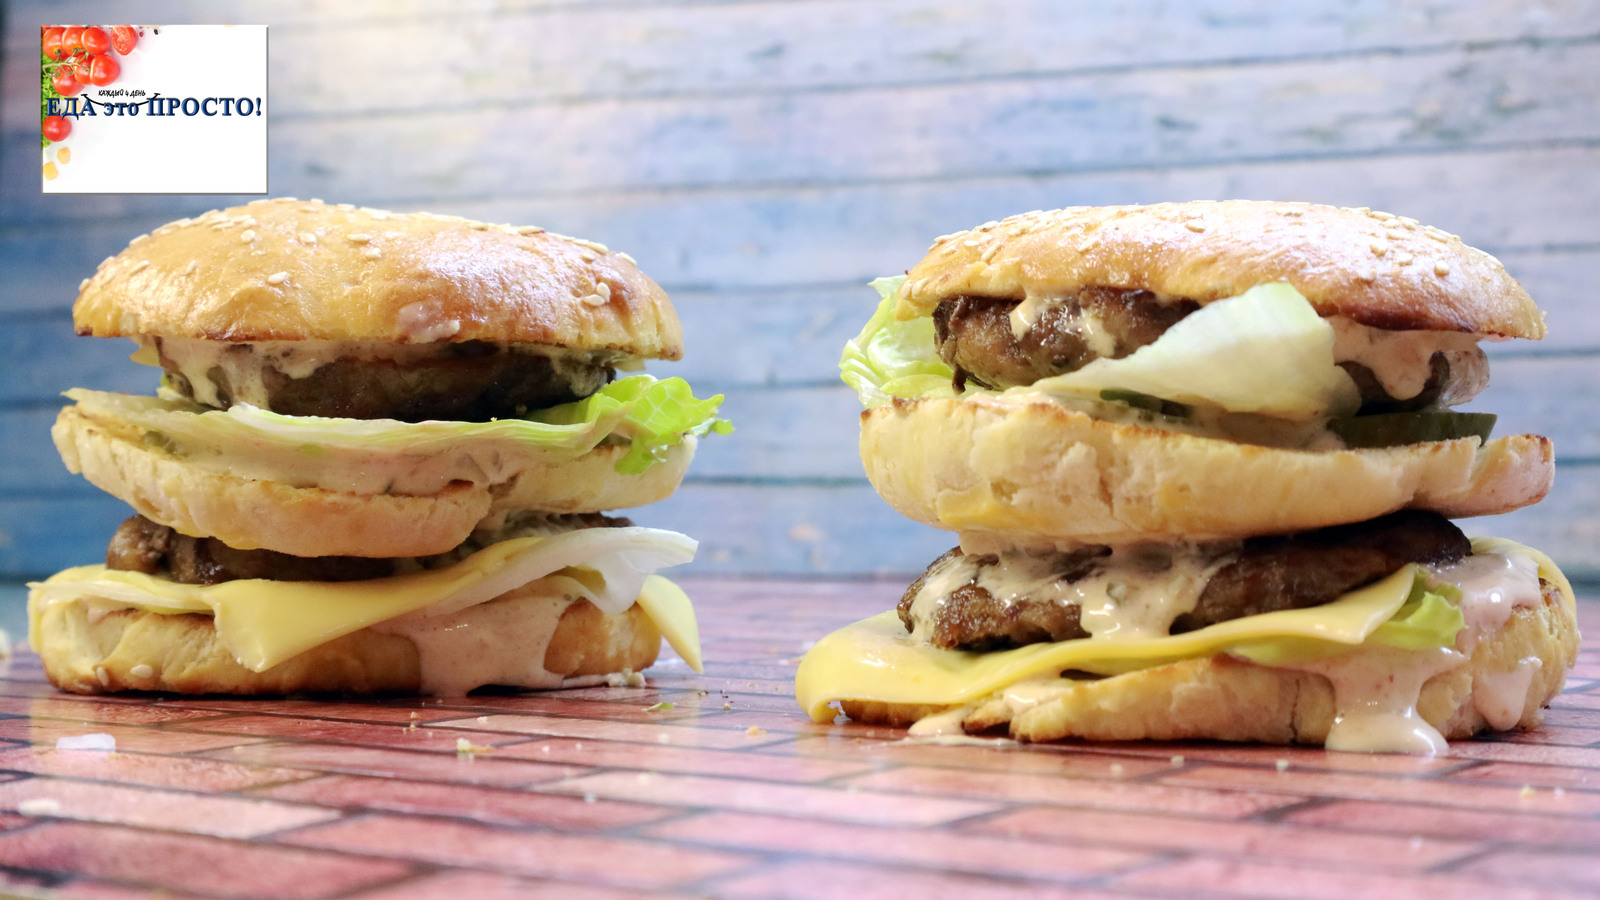 Как сделать гамбургер как в Макдональдсе дома - рецепт с фото и видео | Стайлер